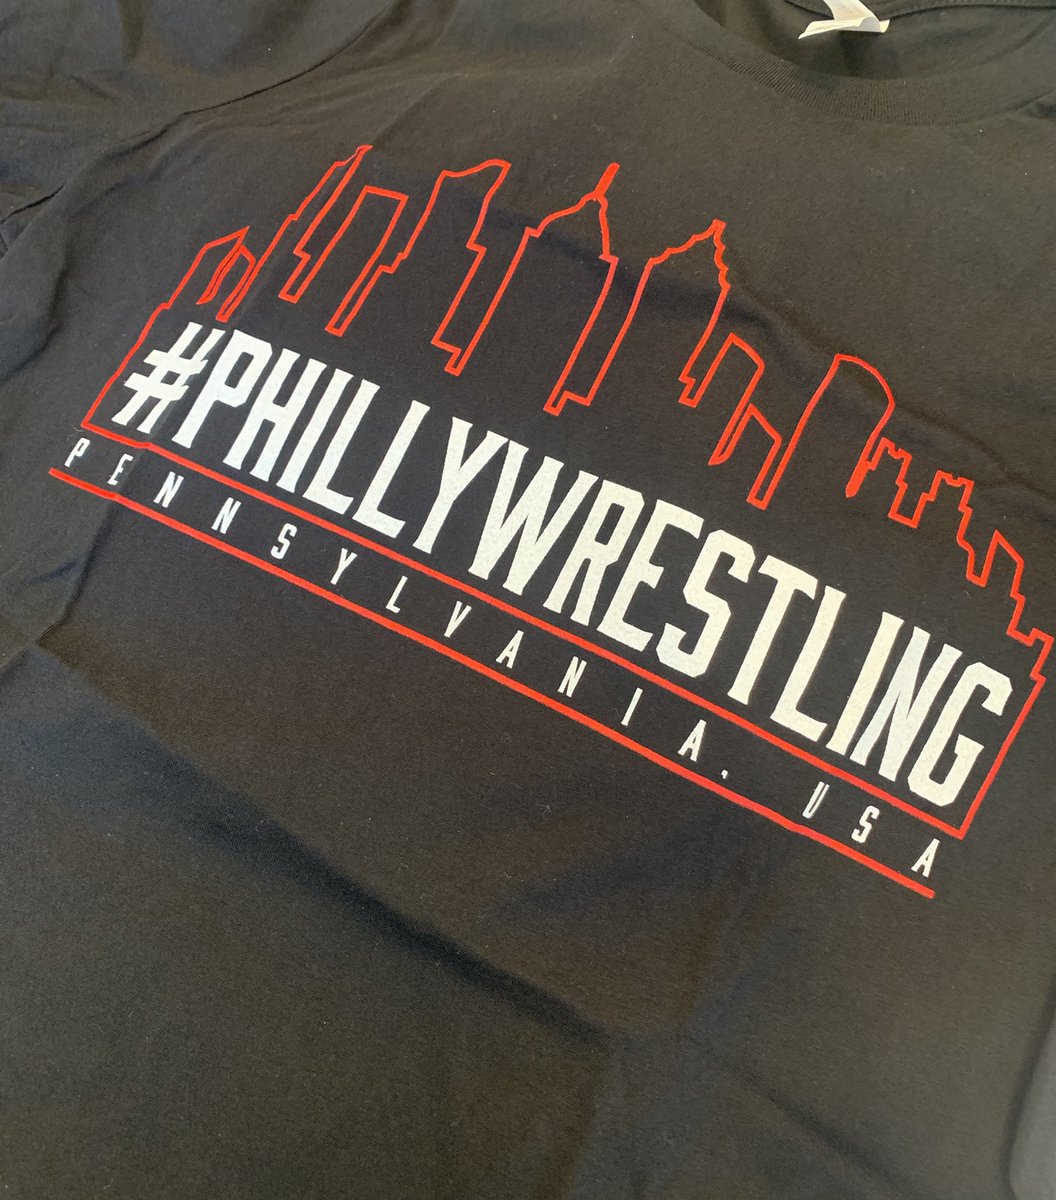 Looking sharp @philawrestnews #phillywrestling @WrestlingPhilly